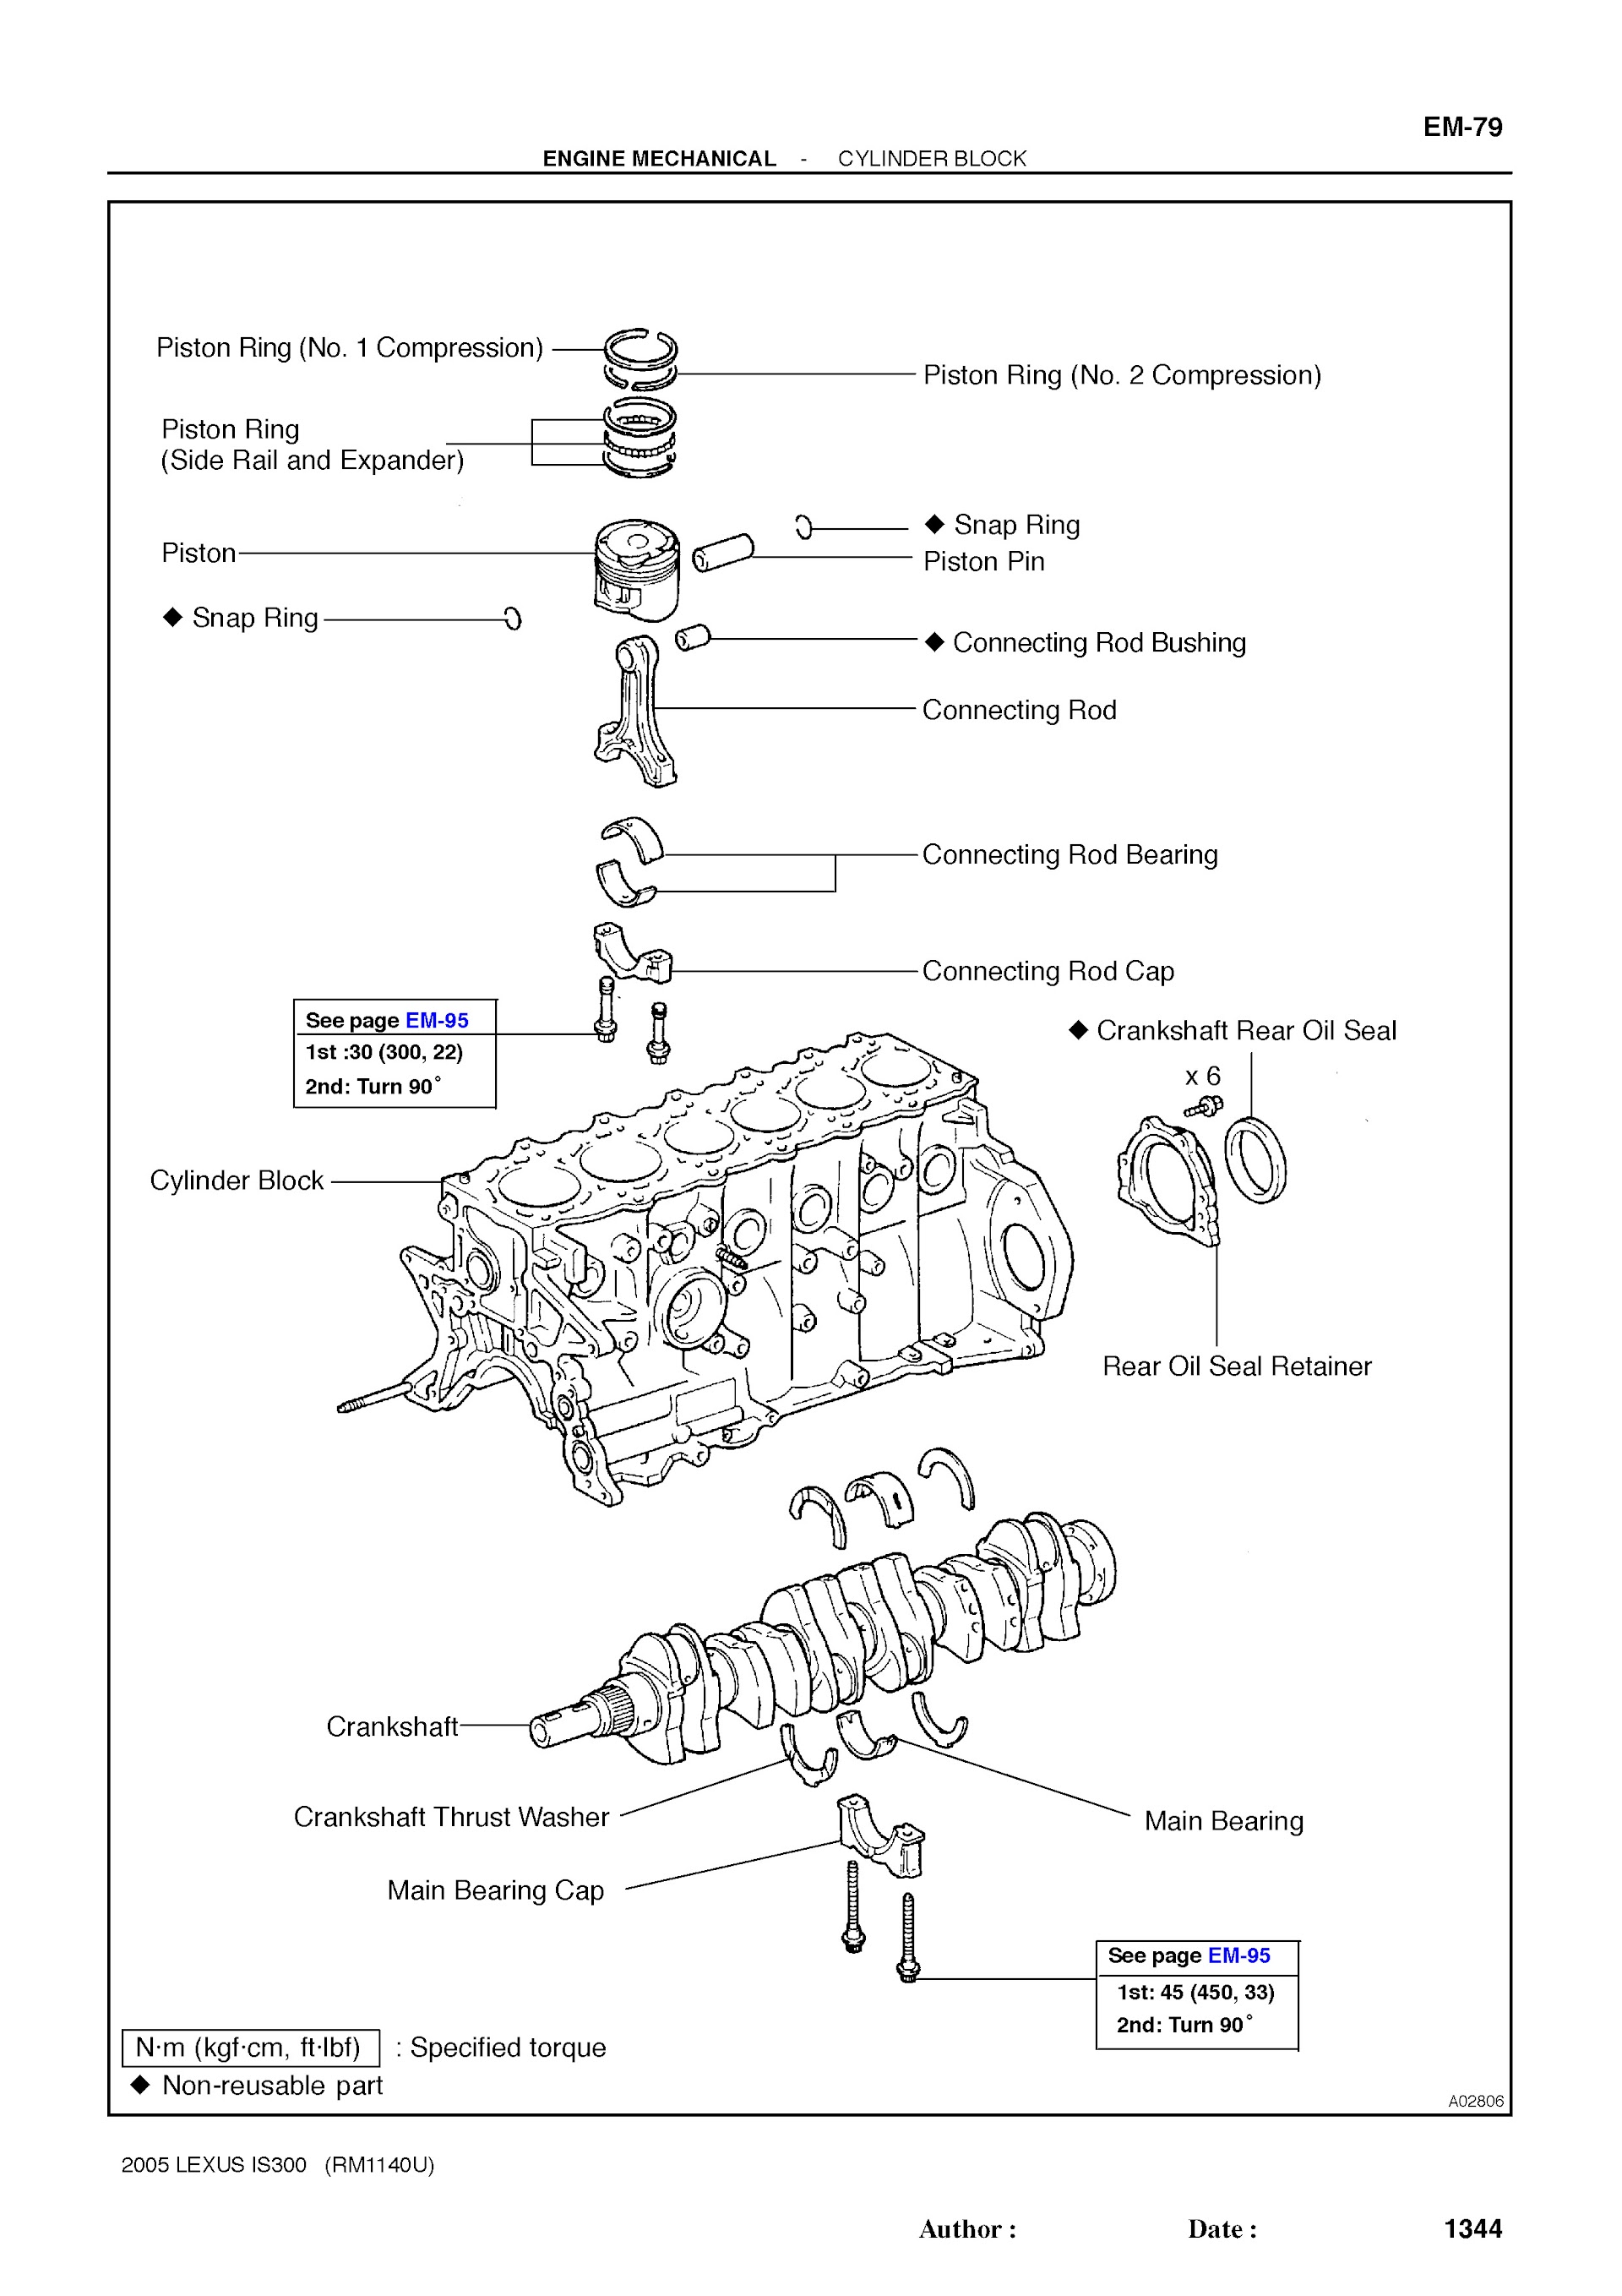 2005 Lexus IS300 Repair Manual Engine Mechanical